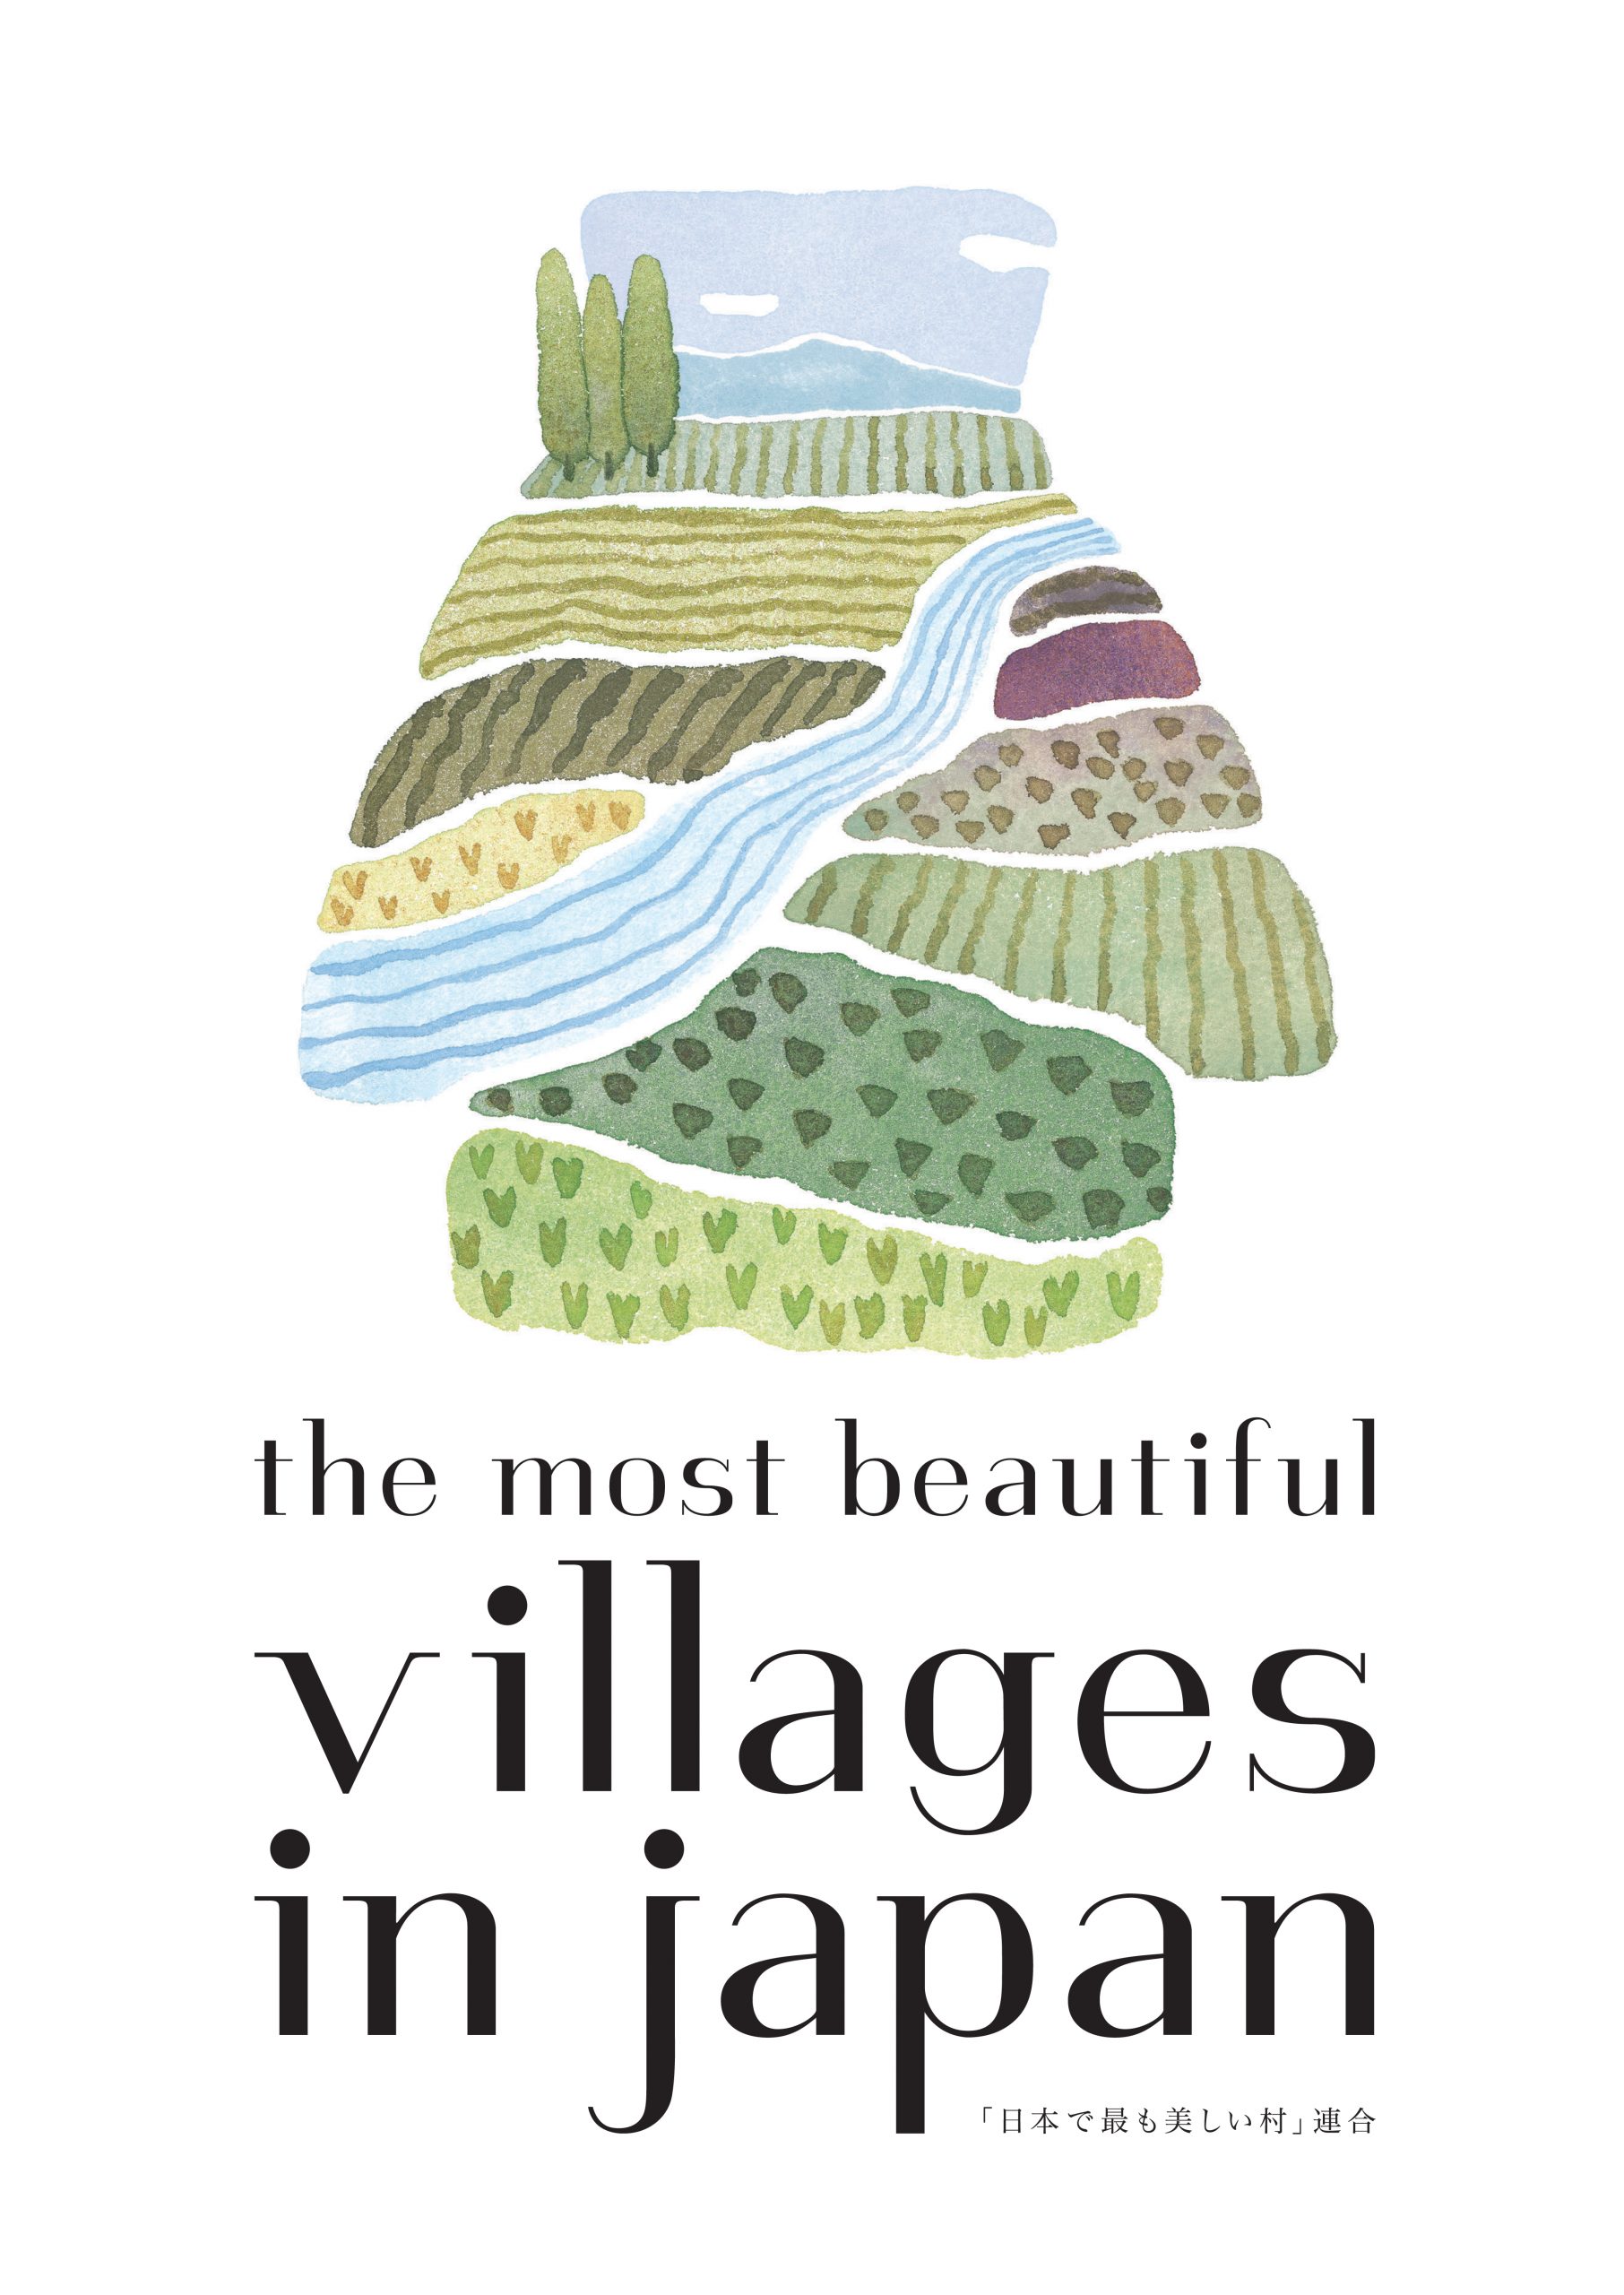 特定非営利活動法人「日本で最も美しい村」連合